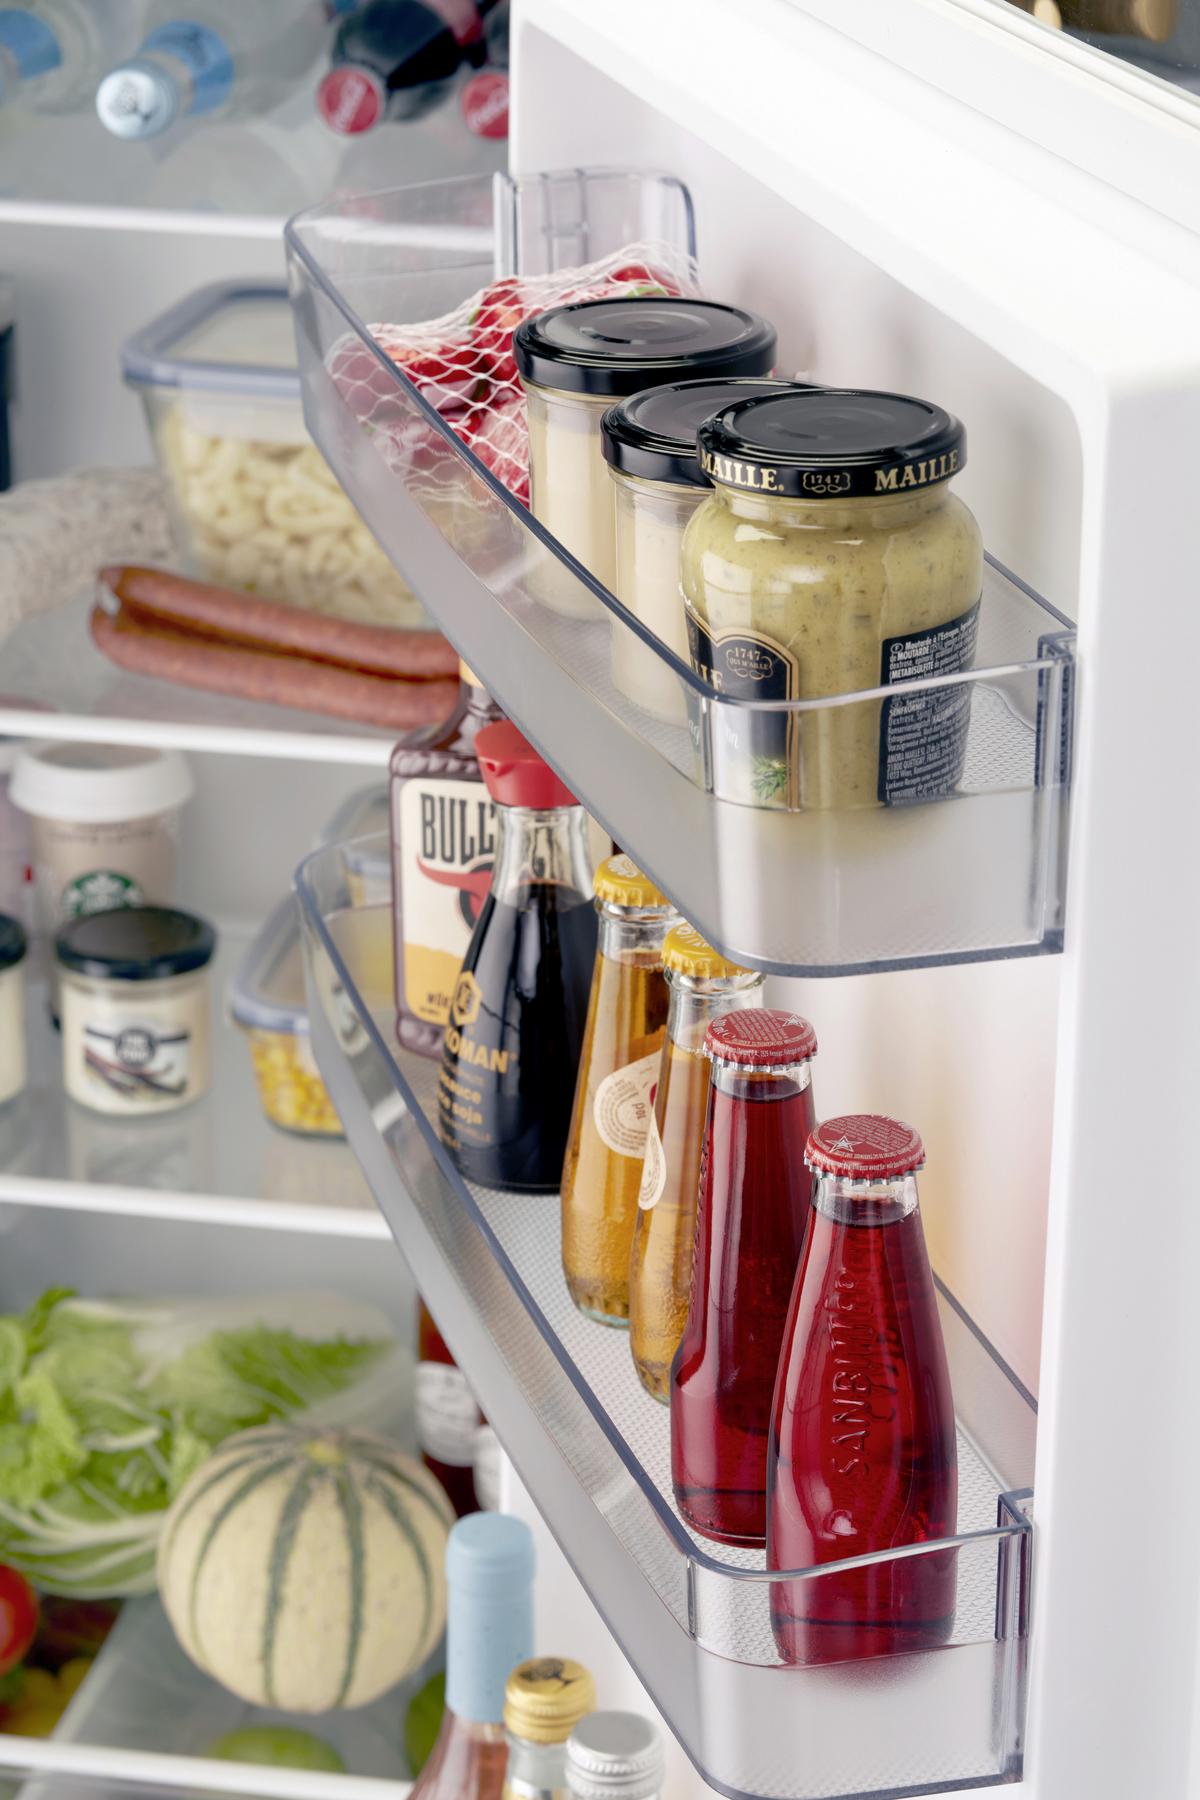 Roter Retro-Kühlschrank mit großem Gefrierfach